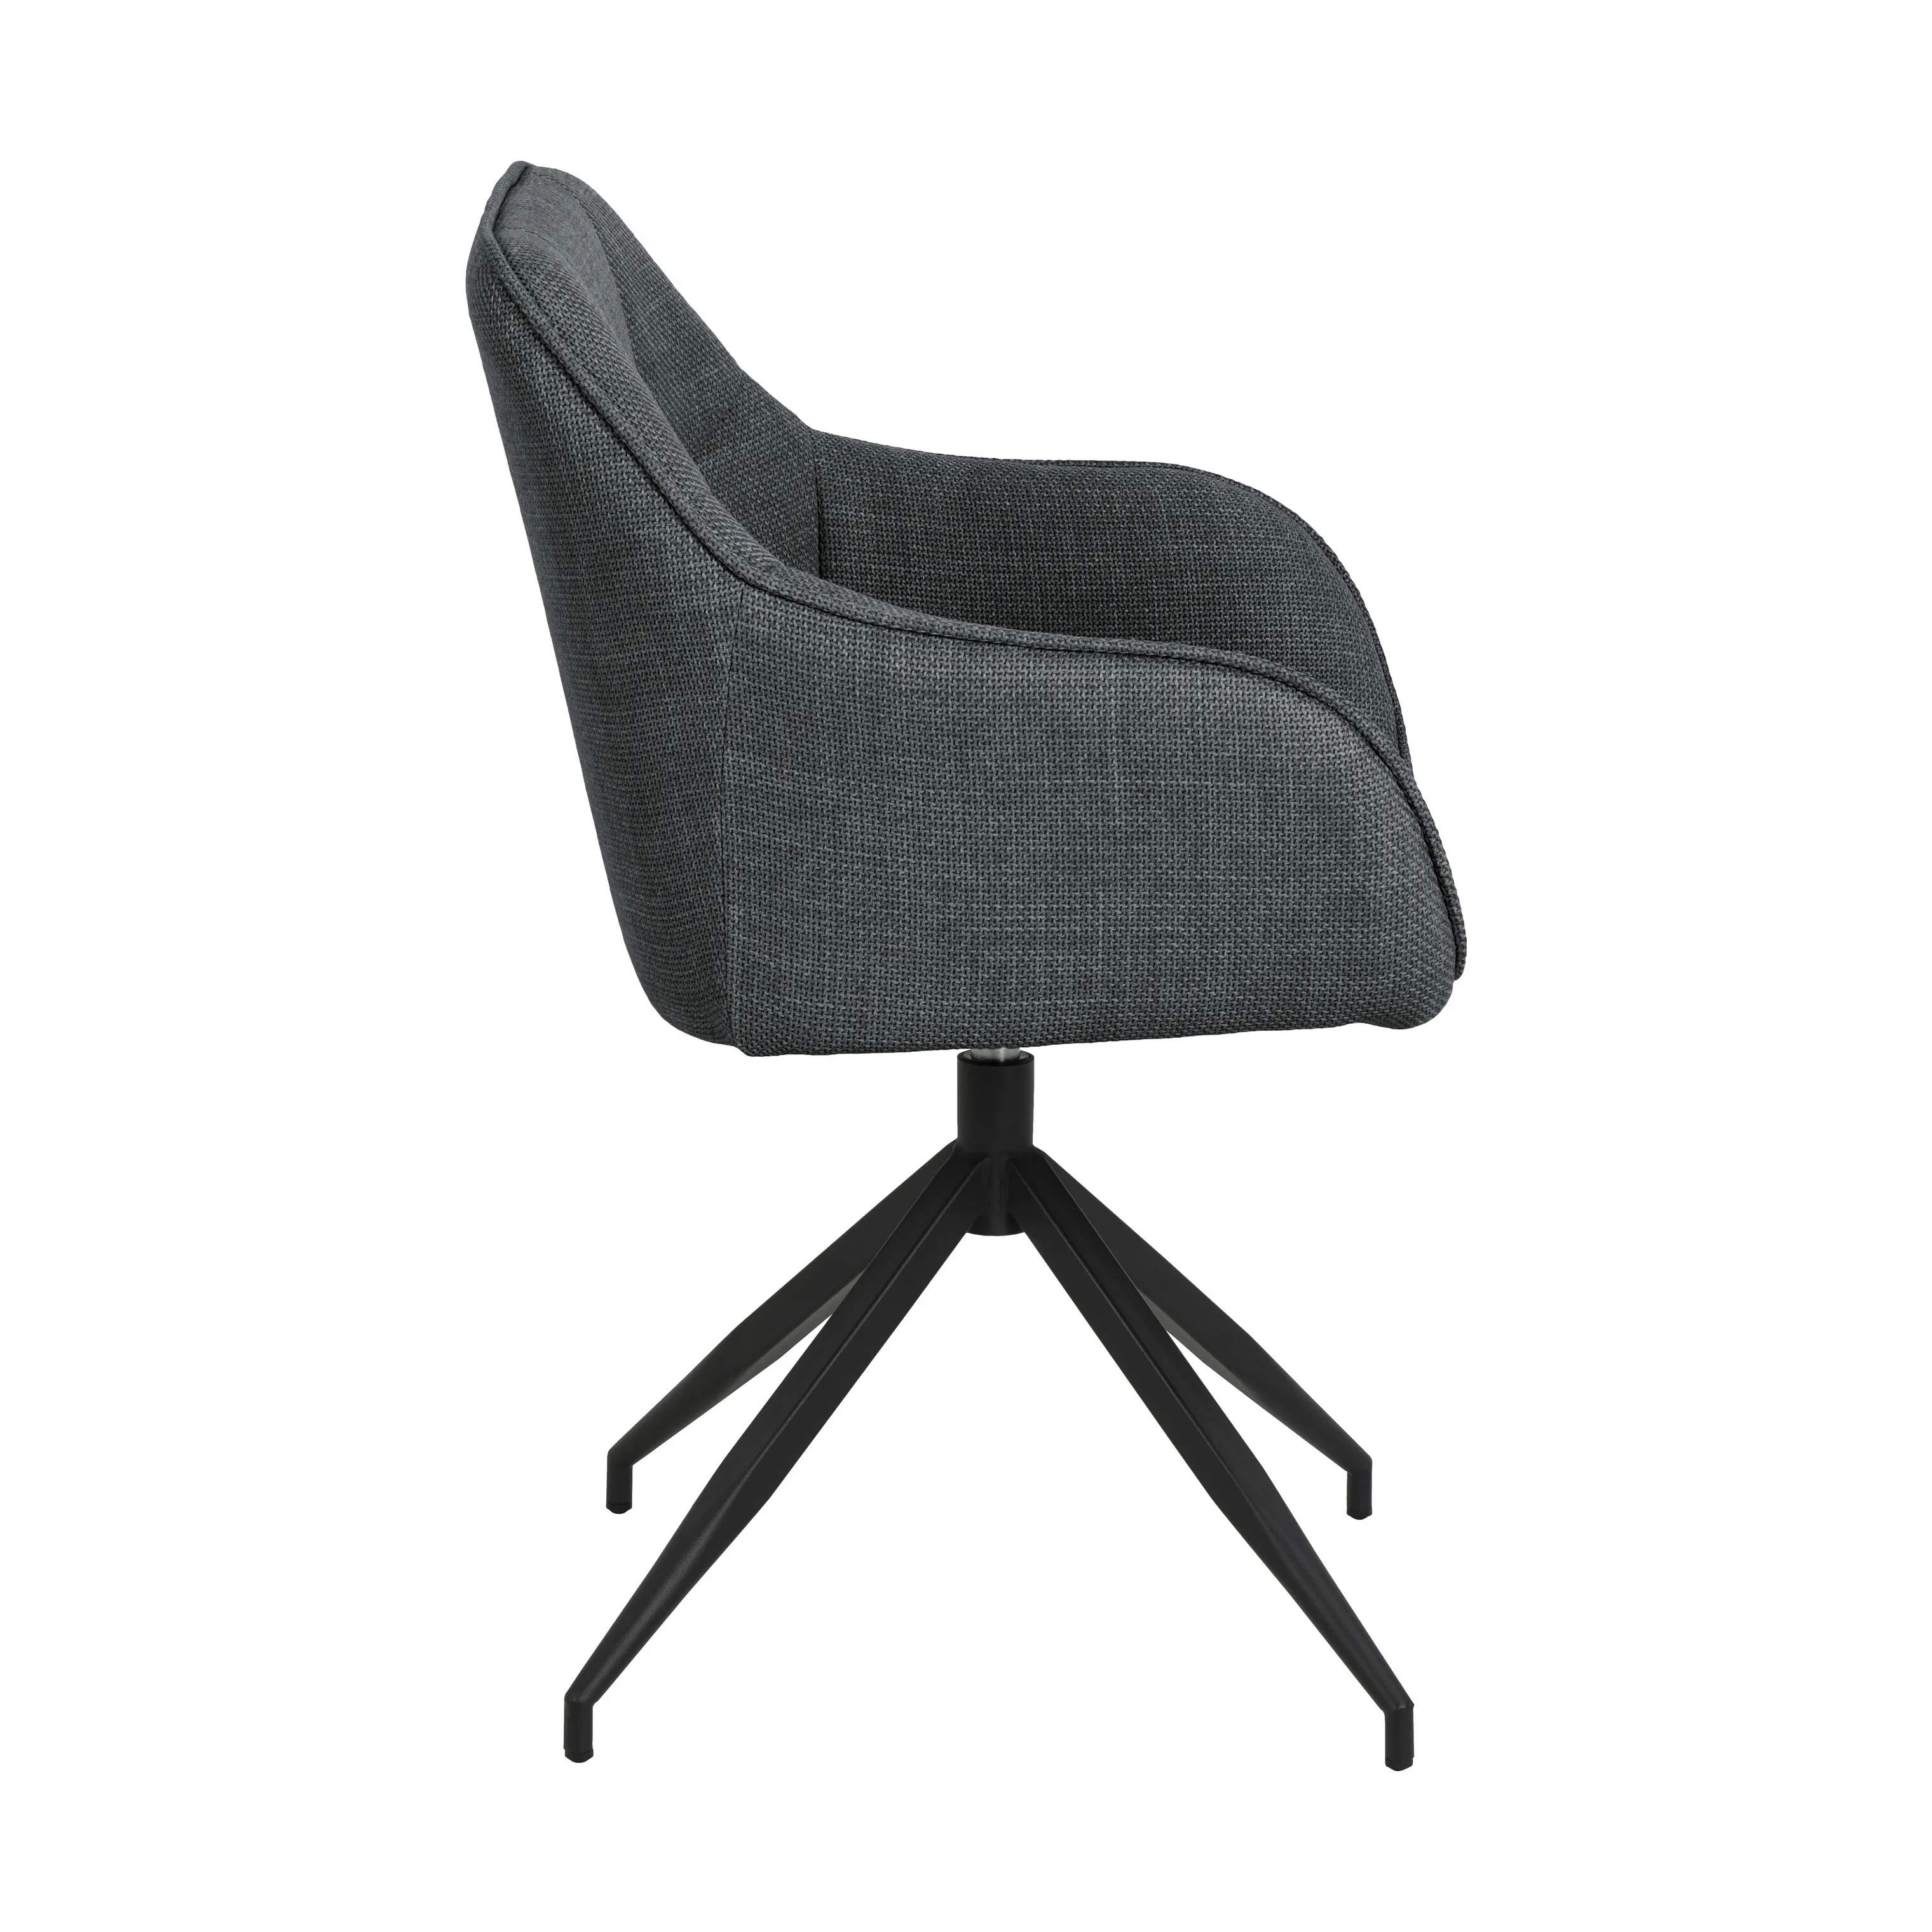 Brenda Spisebordsstol, mørkegrå/sort, large